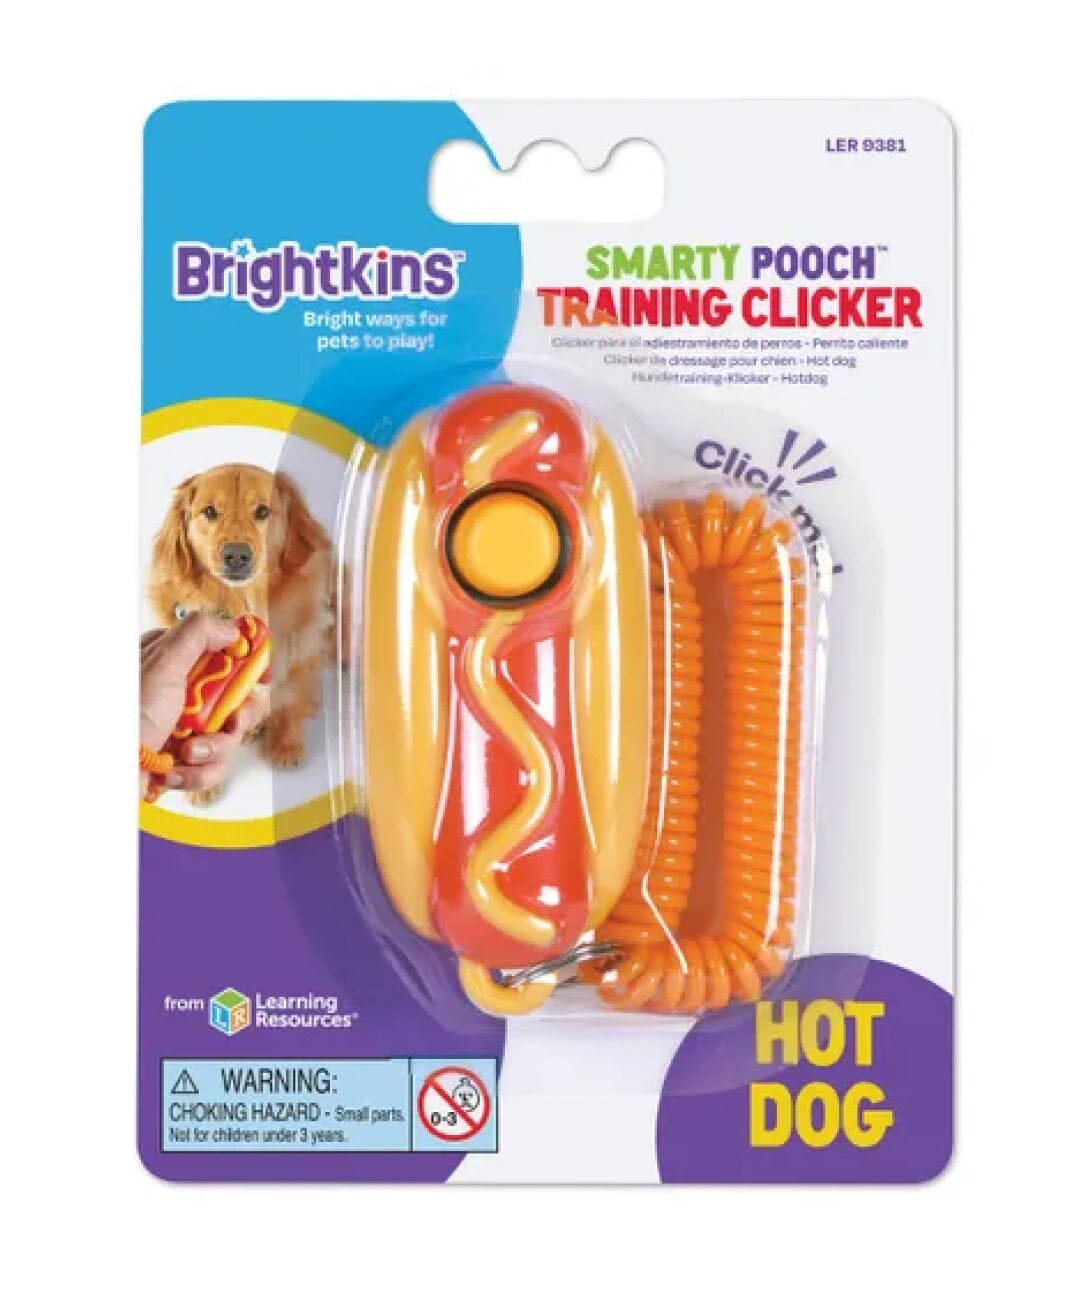 http://store.rover.com/cdn/shop/products/dog-training-hot-dog-clicker-training-clicker-brightkins-564226.jpg?v=1676016134